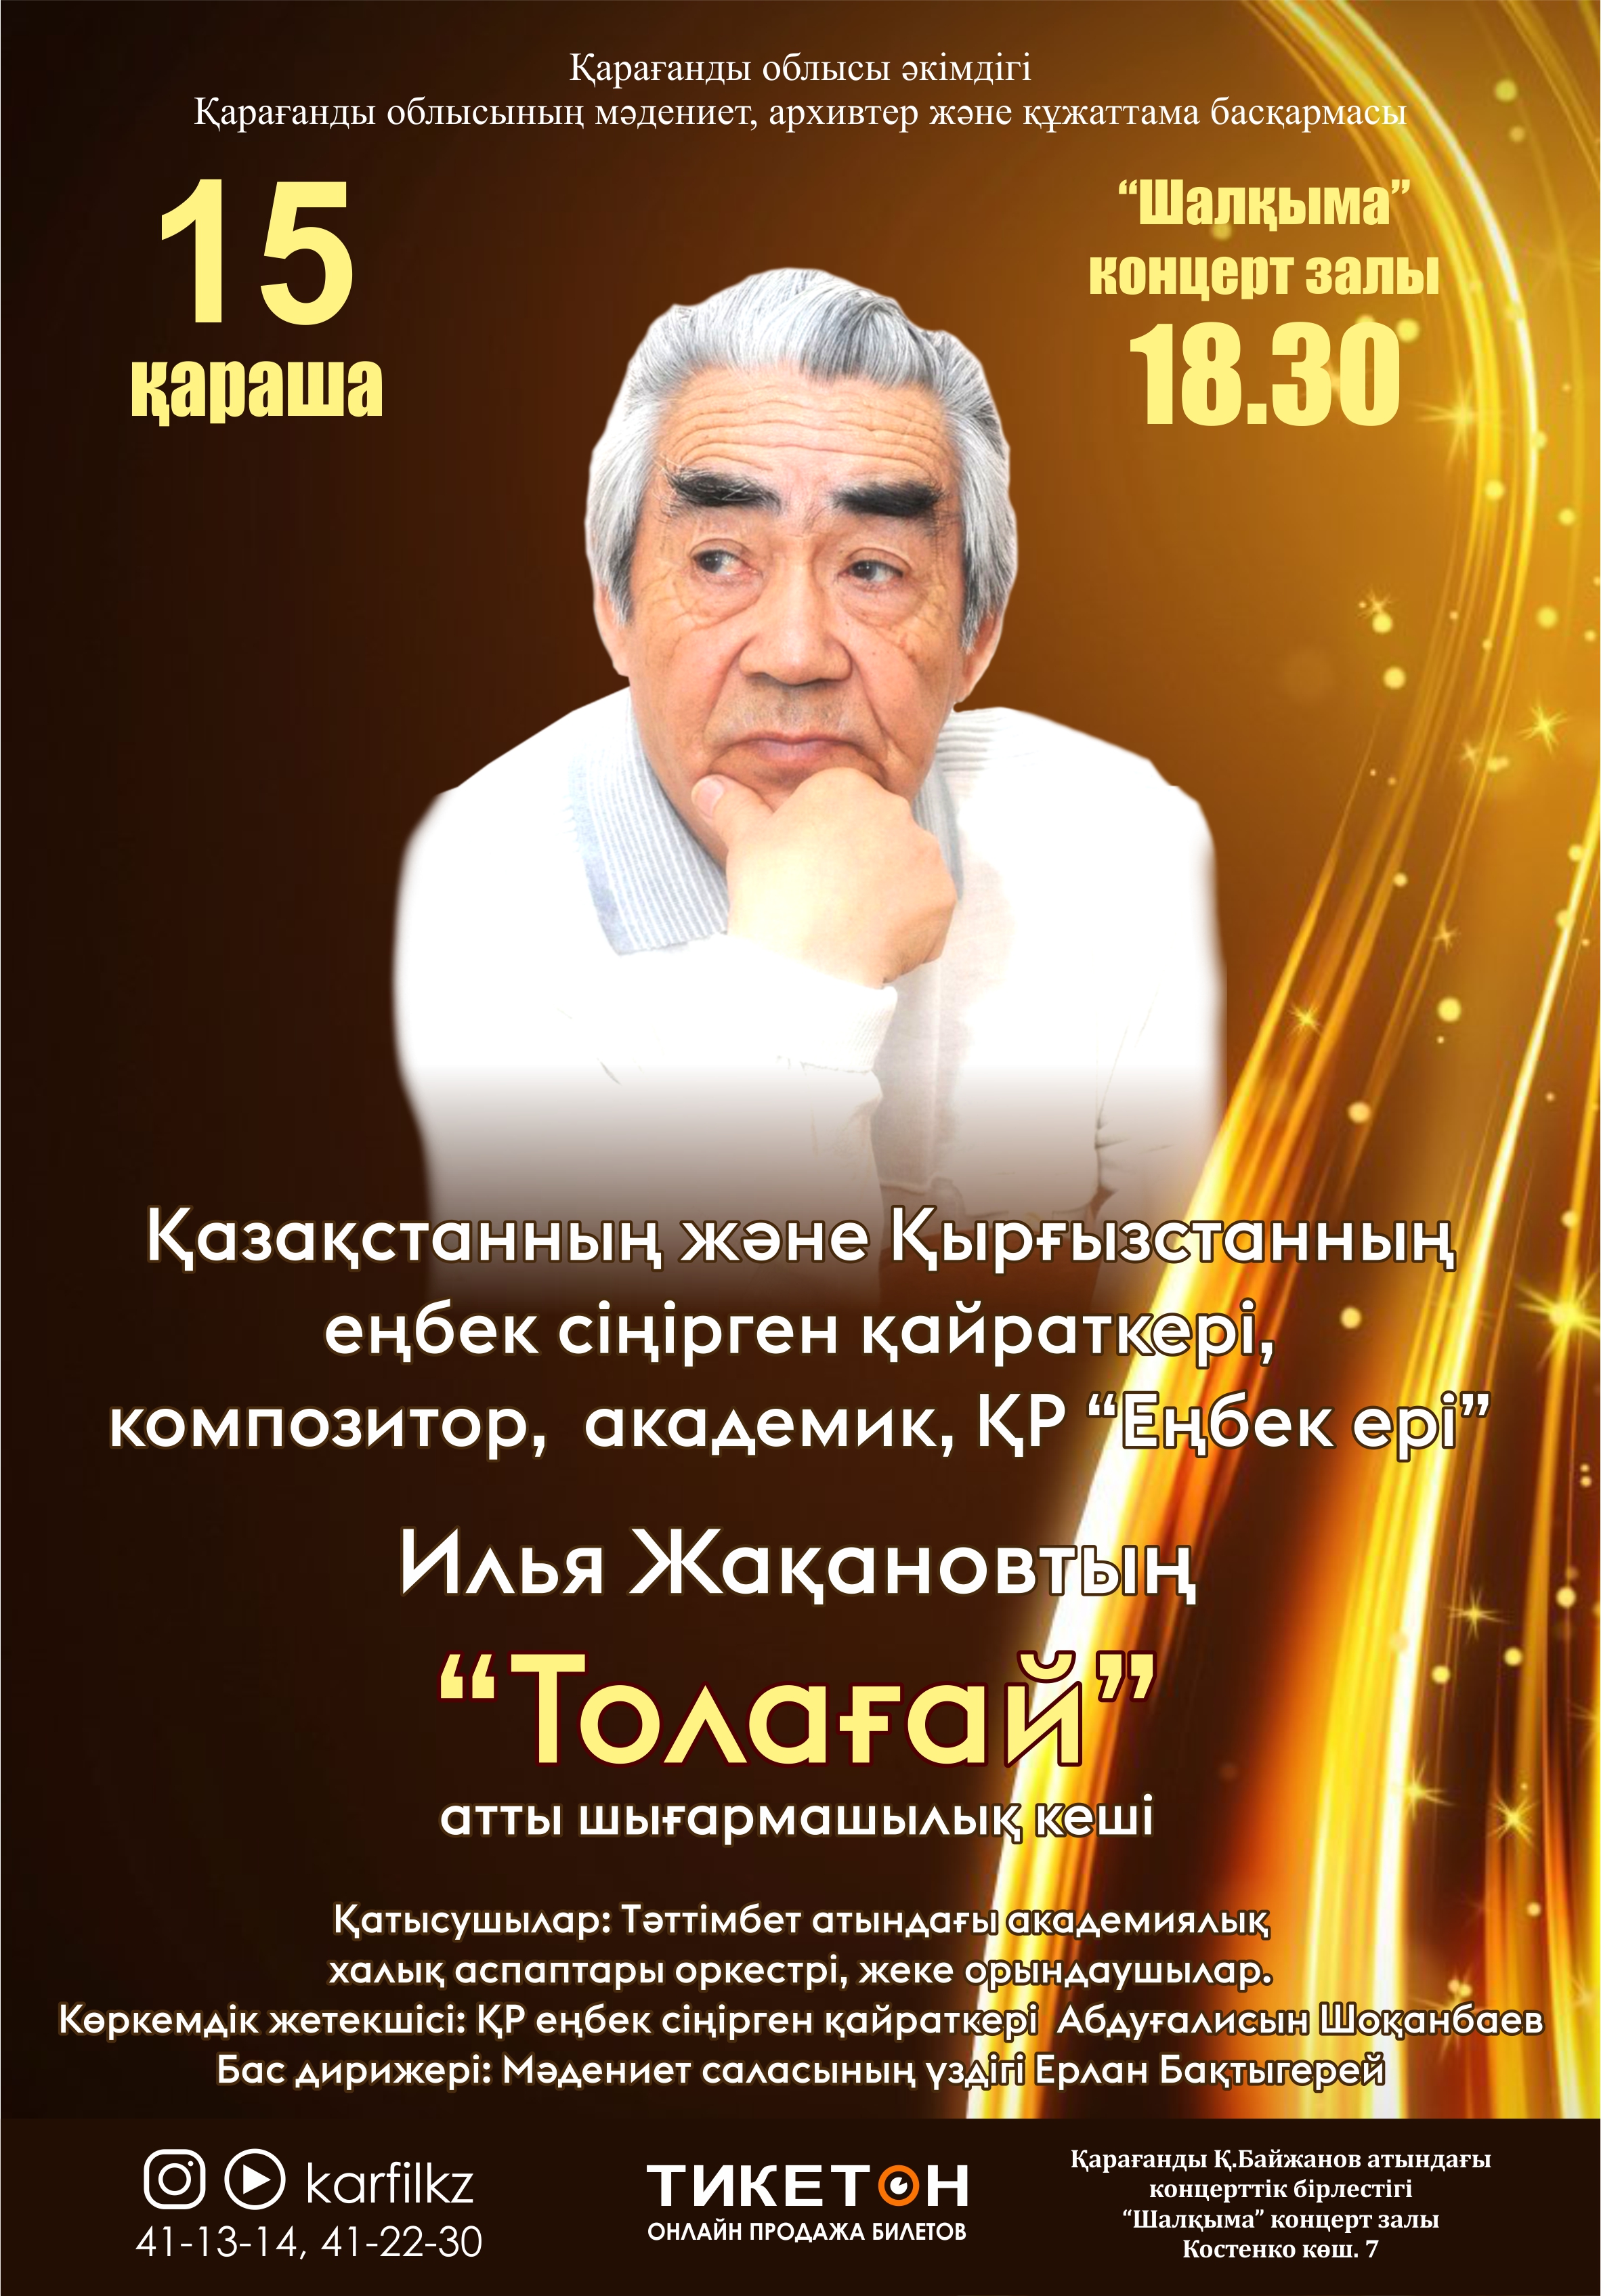 Творческий вечер заслуженного деятеля РК, писателя, композитора и искусствоведа Ильи Жақанова